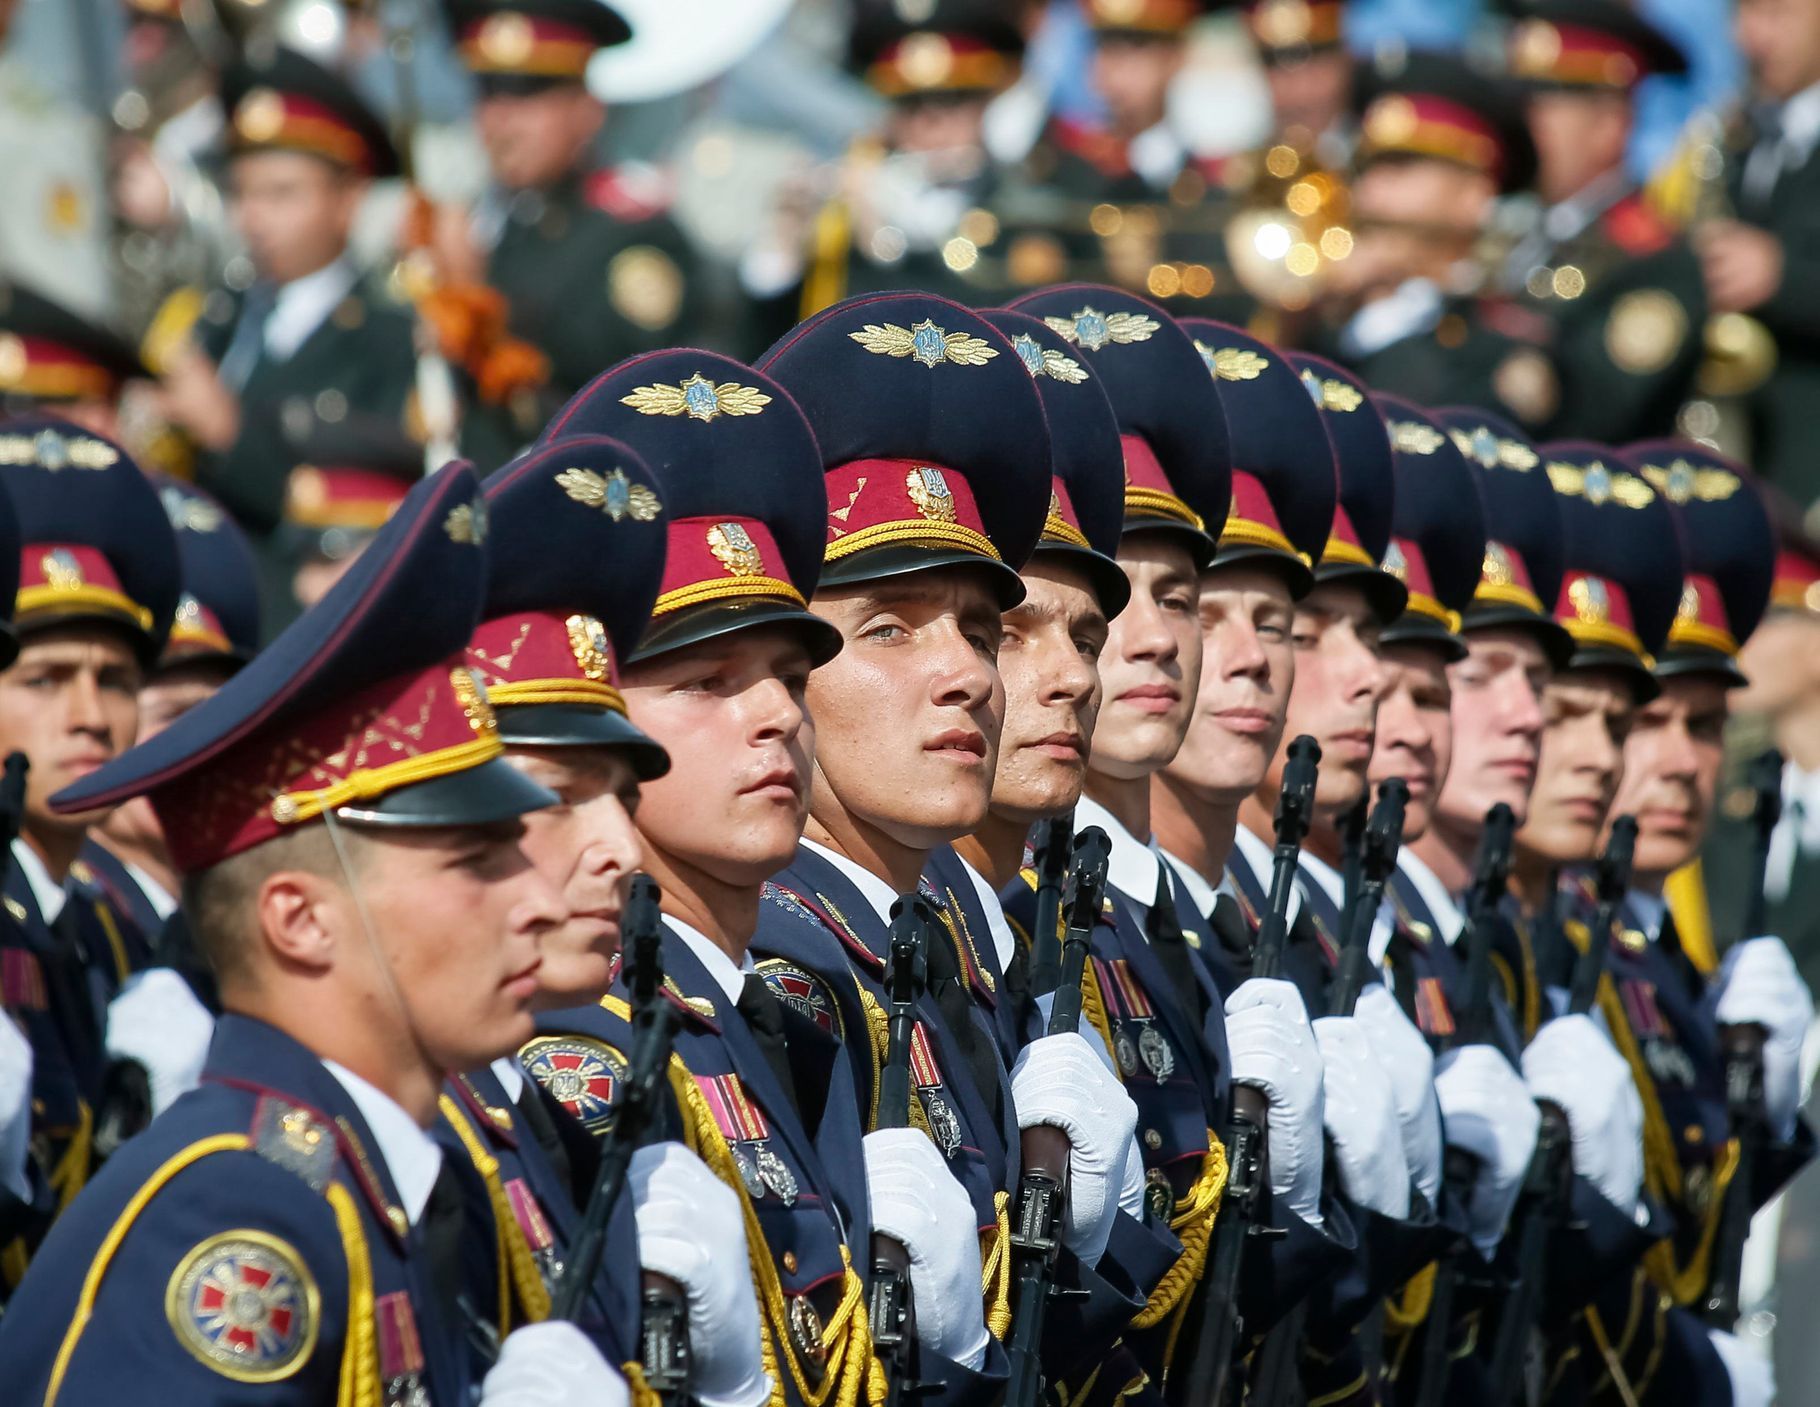 Ukrajina - vojenská přehlídka v Kyjevě během oslav nezávislosti